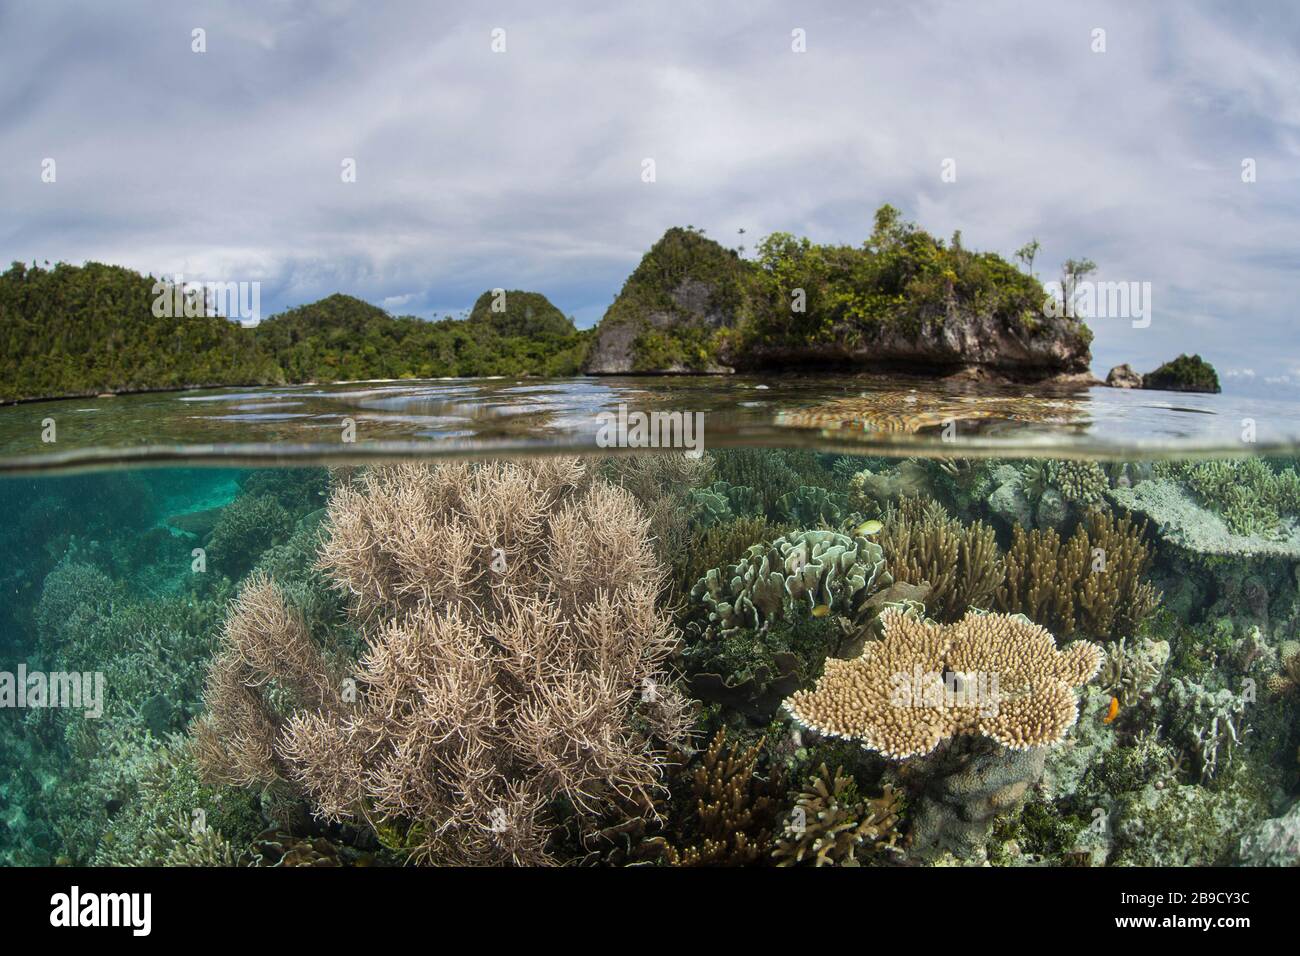 Un beau récif de corail prospère autour d'une île dans une partie éloignée de Raja Ampat, Indonésie. Banque D'Images